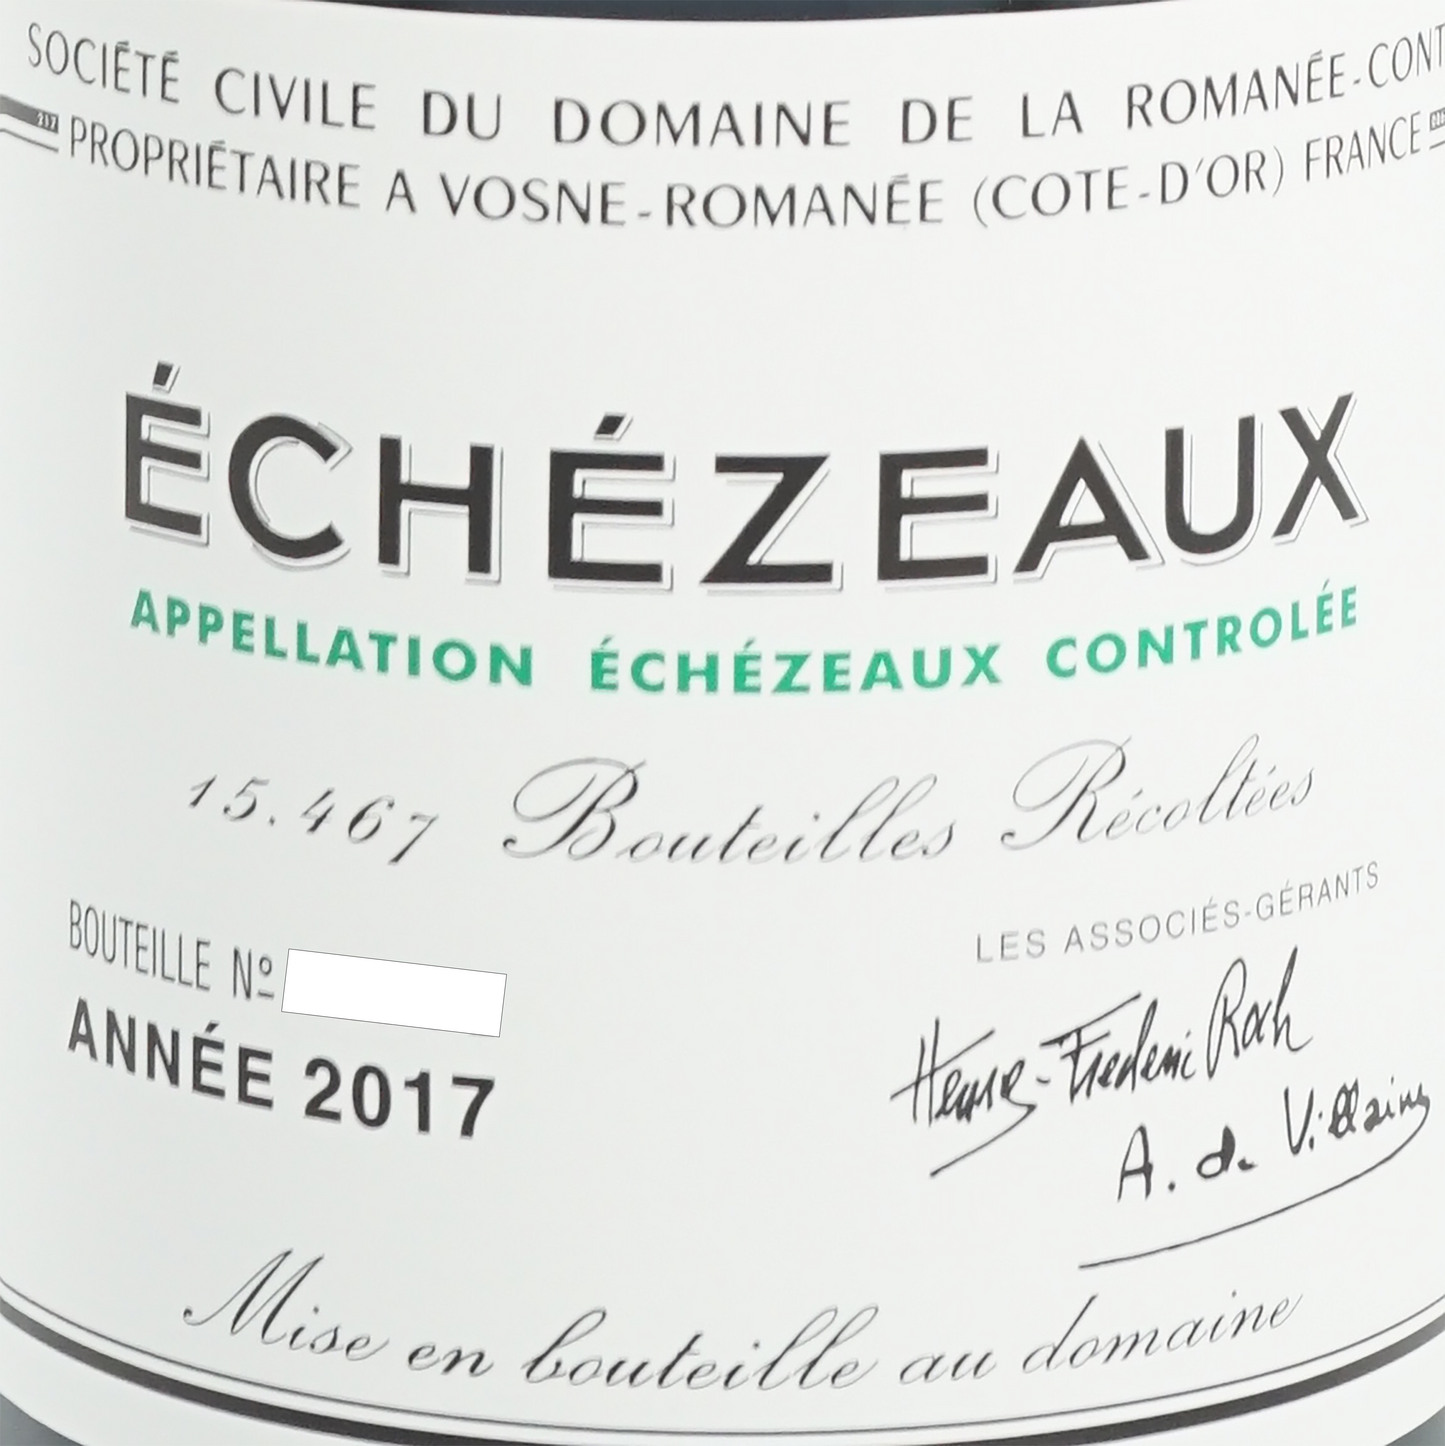 エシェゾー・グラン・クリュ、D.R.C.「2017」Echezeaux Grand Cru、D.R.C.